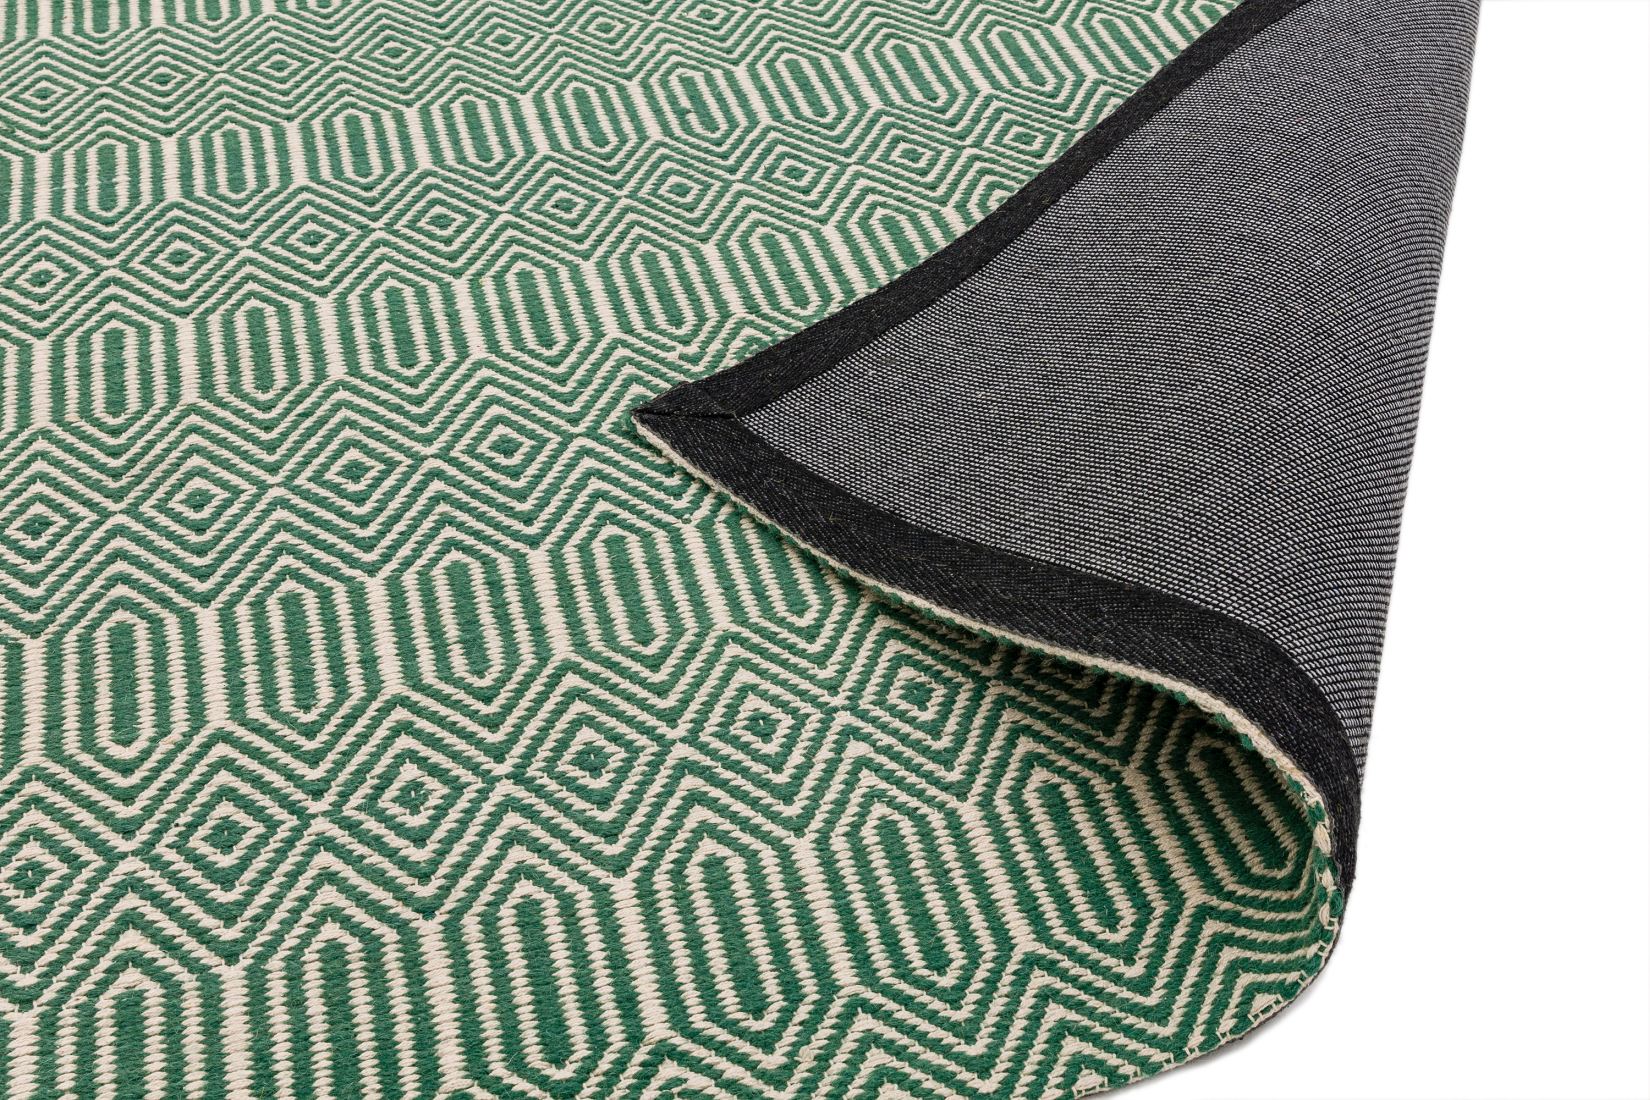 Sloan Geometric Flatweave Cotton Rug - Green